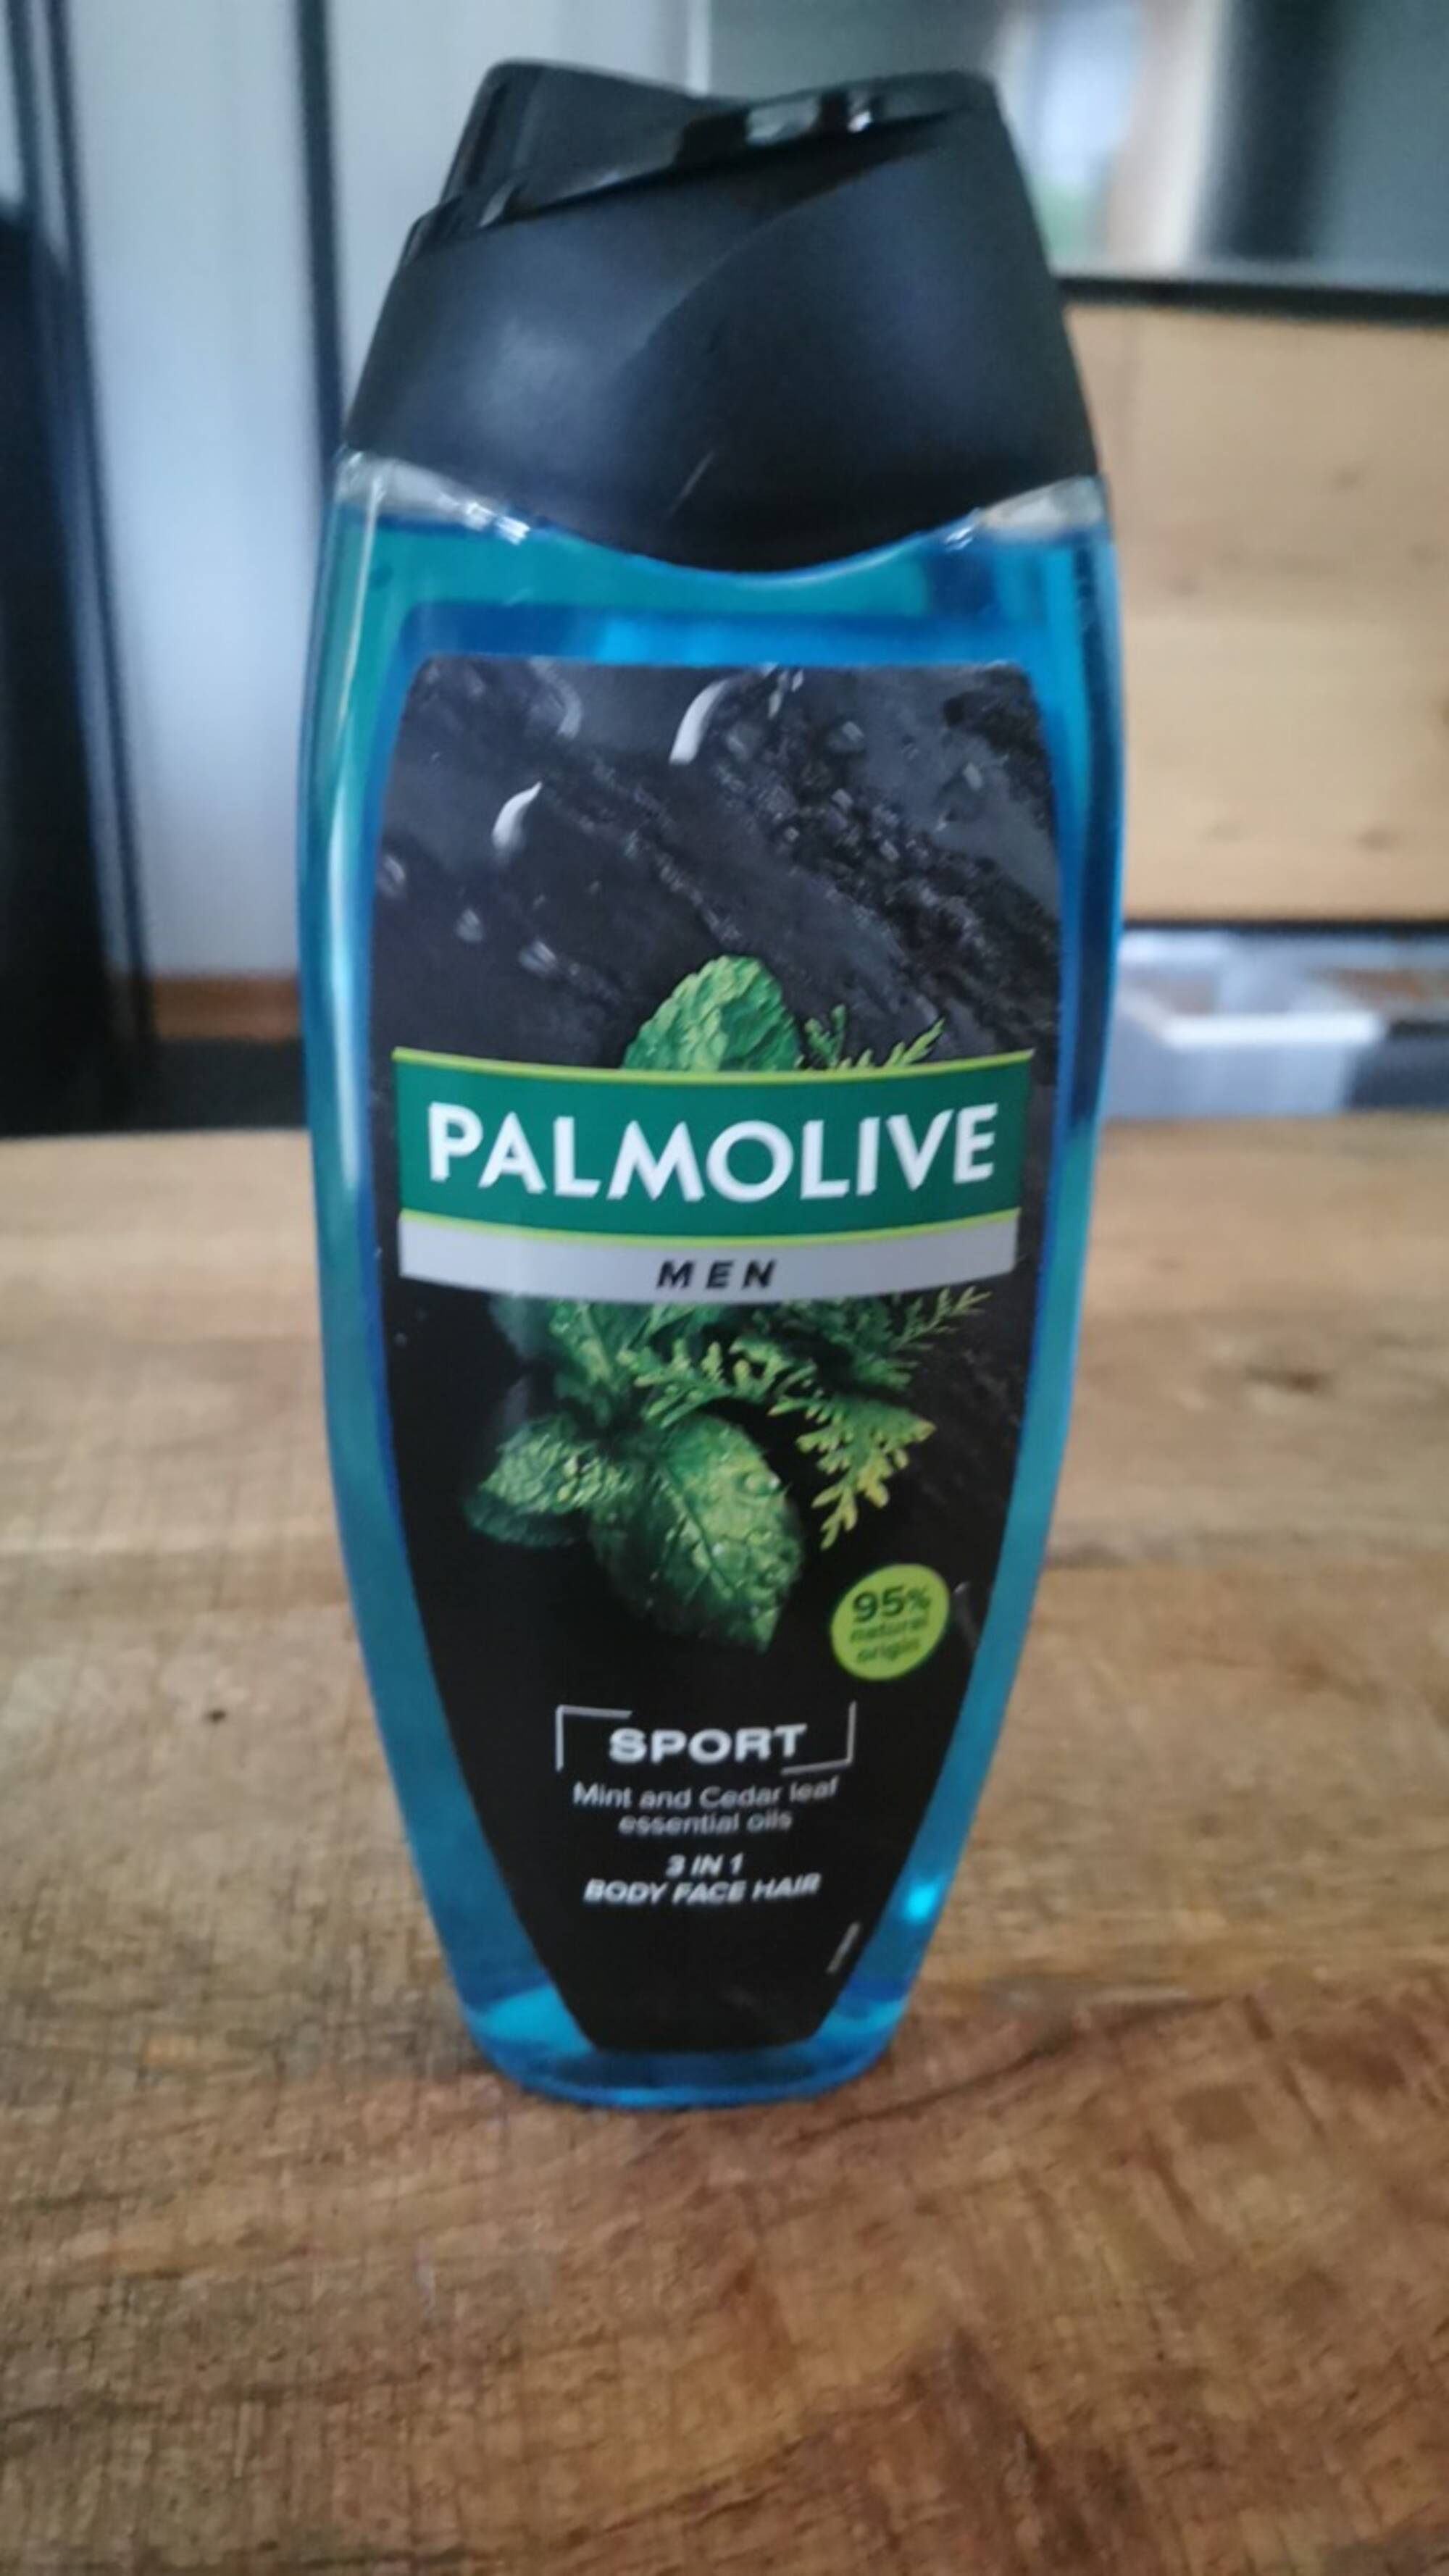 PALMOLIVE - Men sport - 3in1 shower gel 